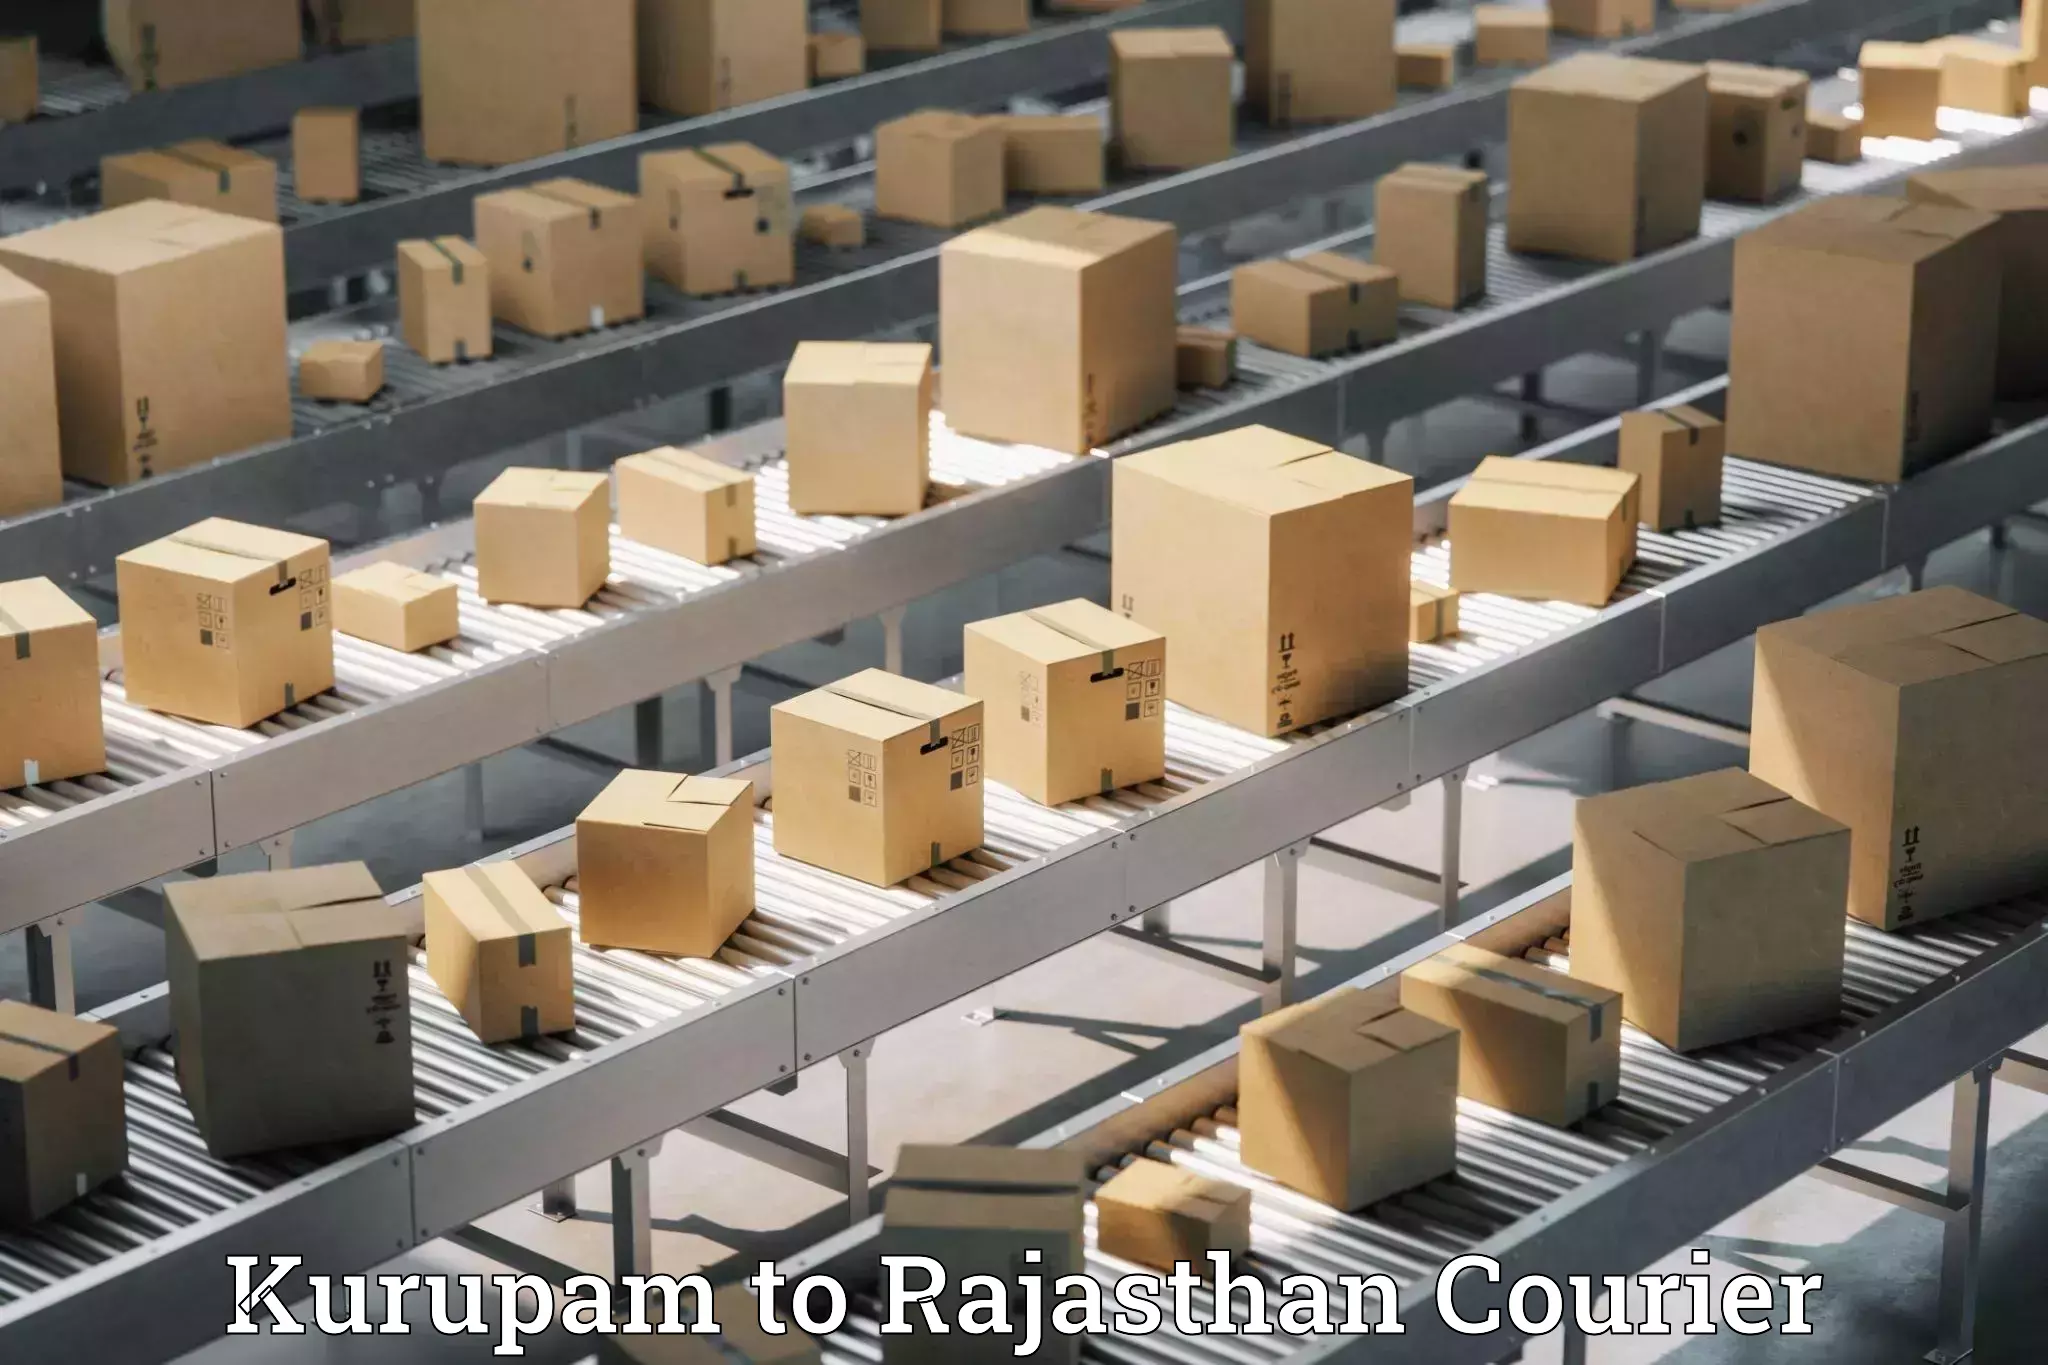 Premium courier solutions Kurupam to Udaipurwati